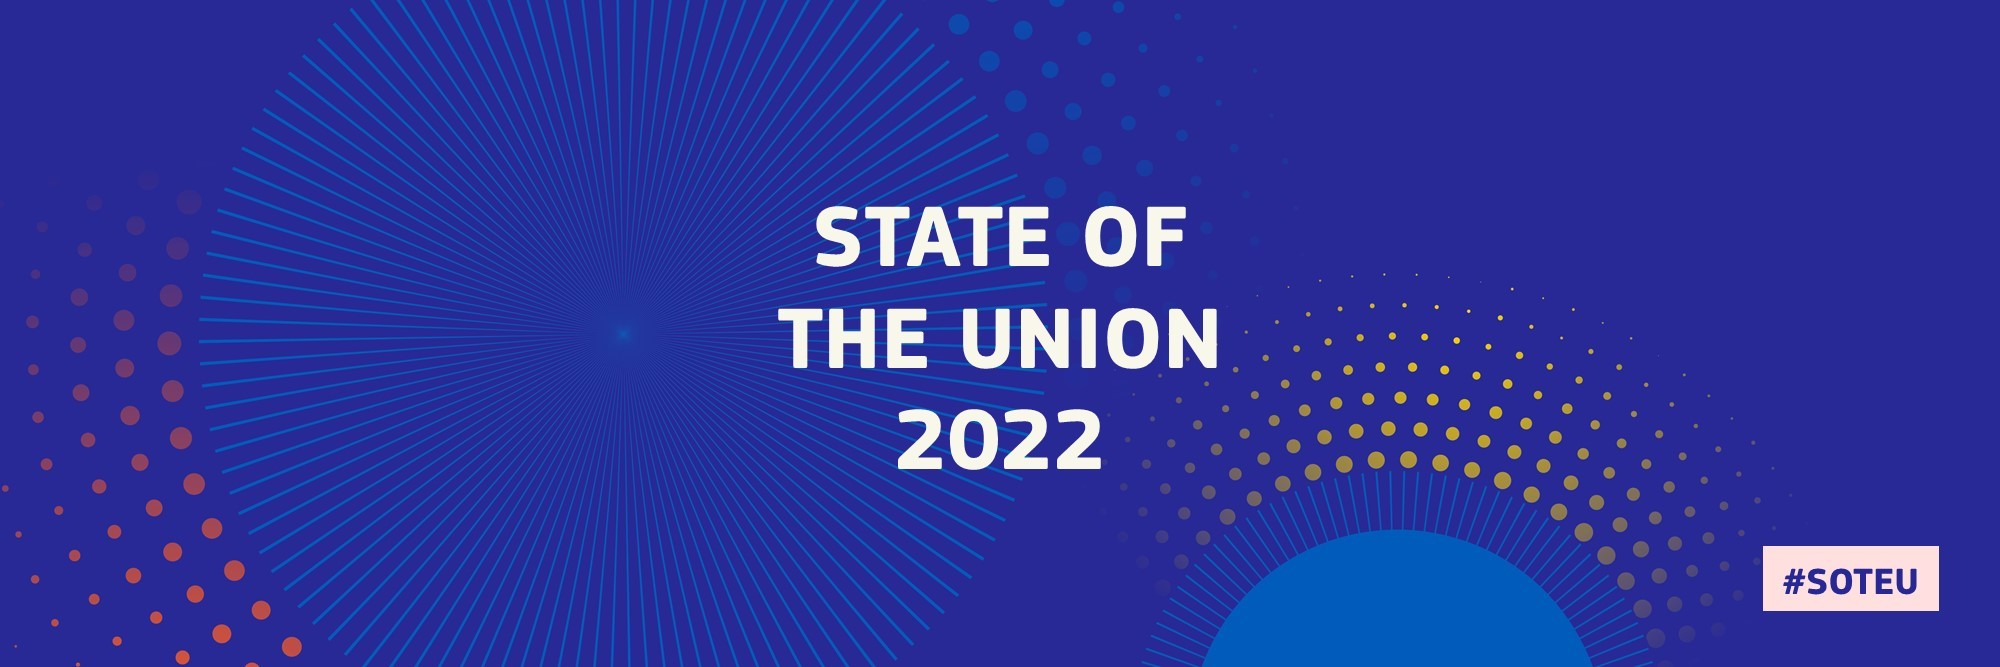 stan unii 2022 r. ilustracja abstrakcyjna #SOTEU2022